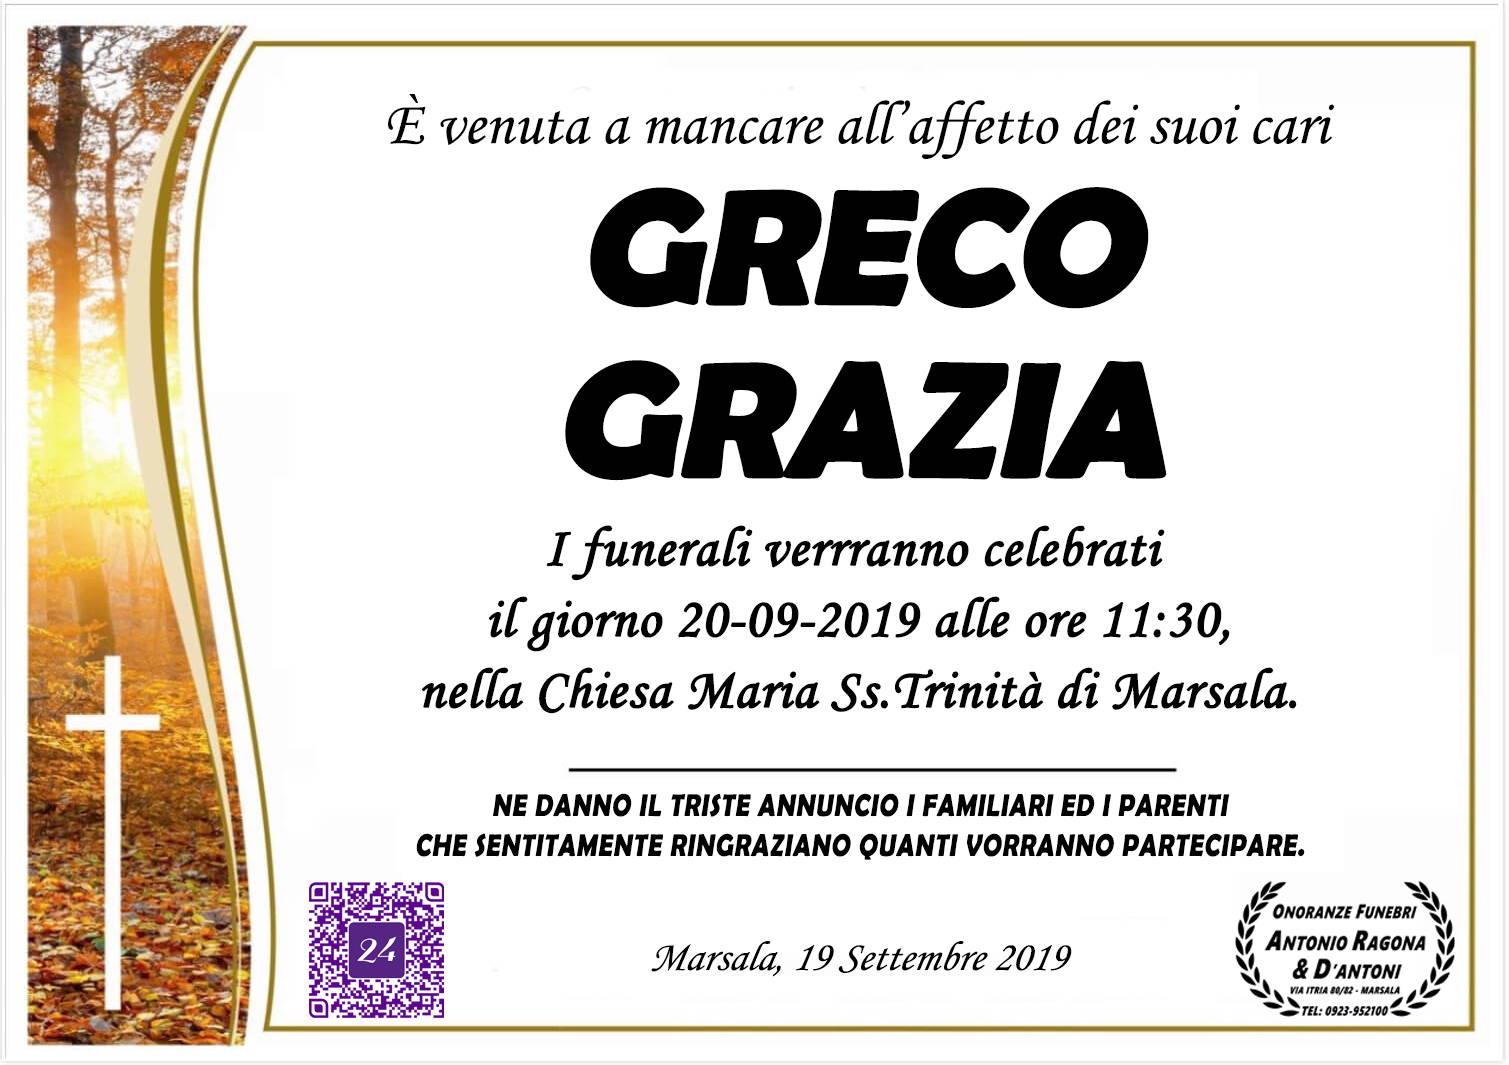 Grazia Greco